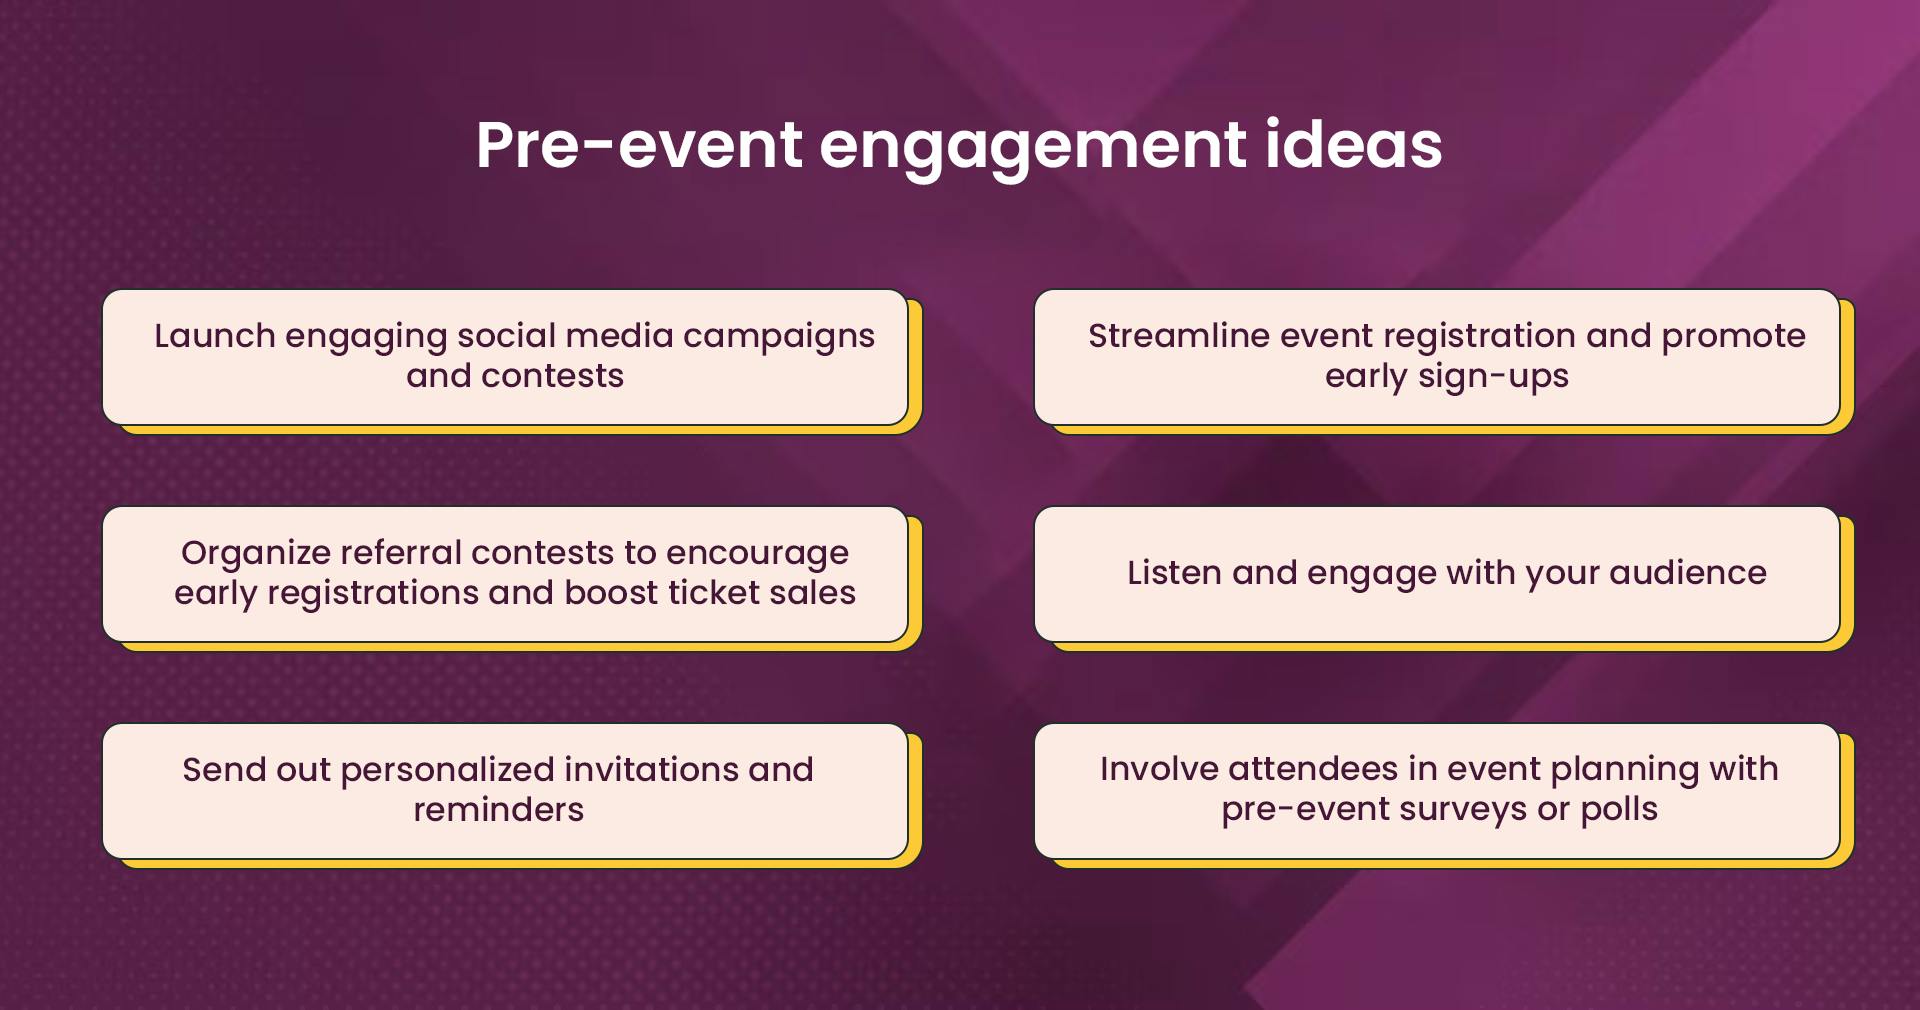 Pre-event engagement ideas